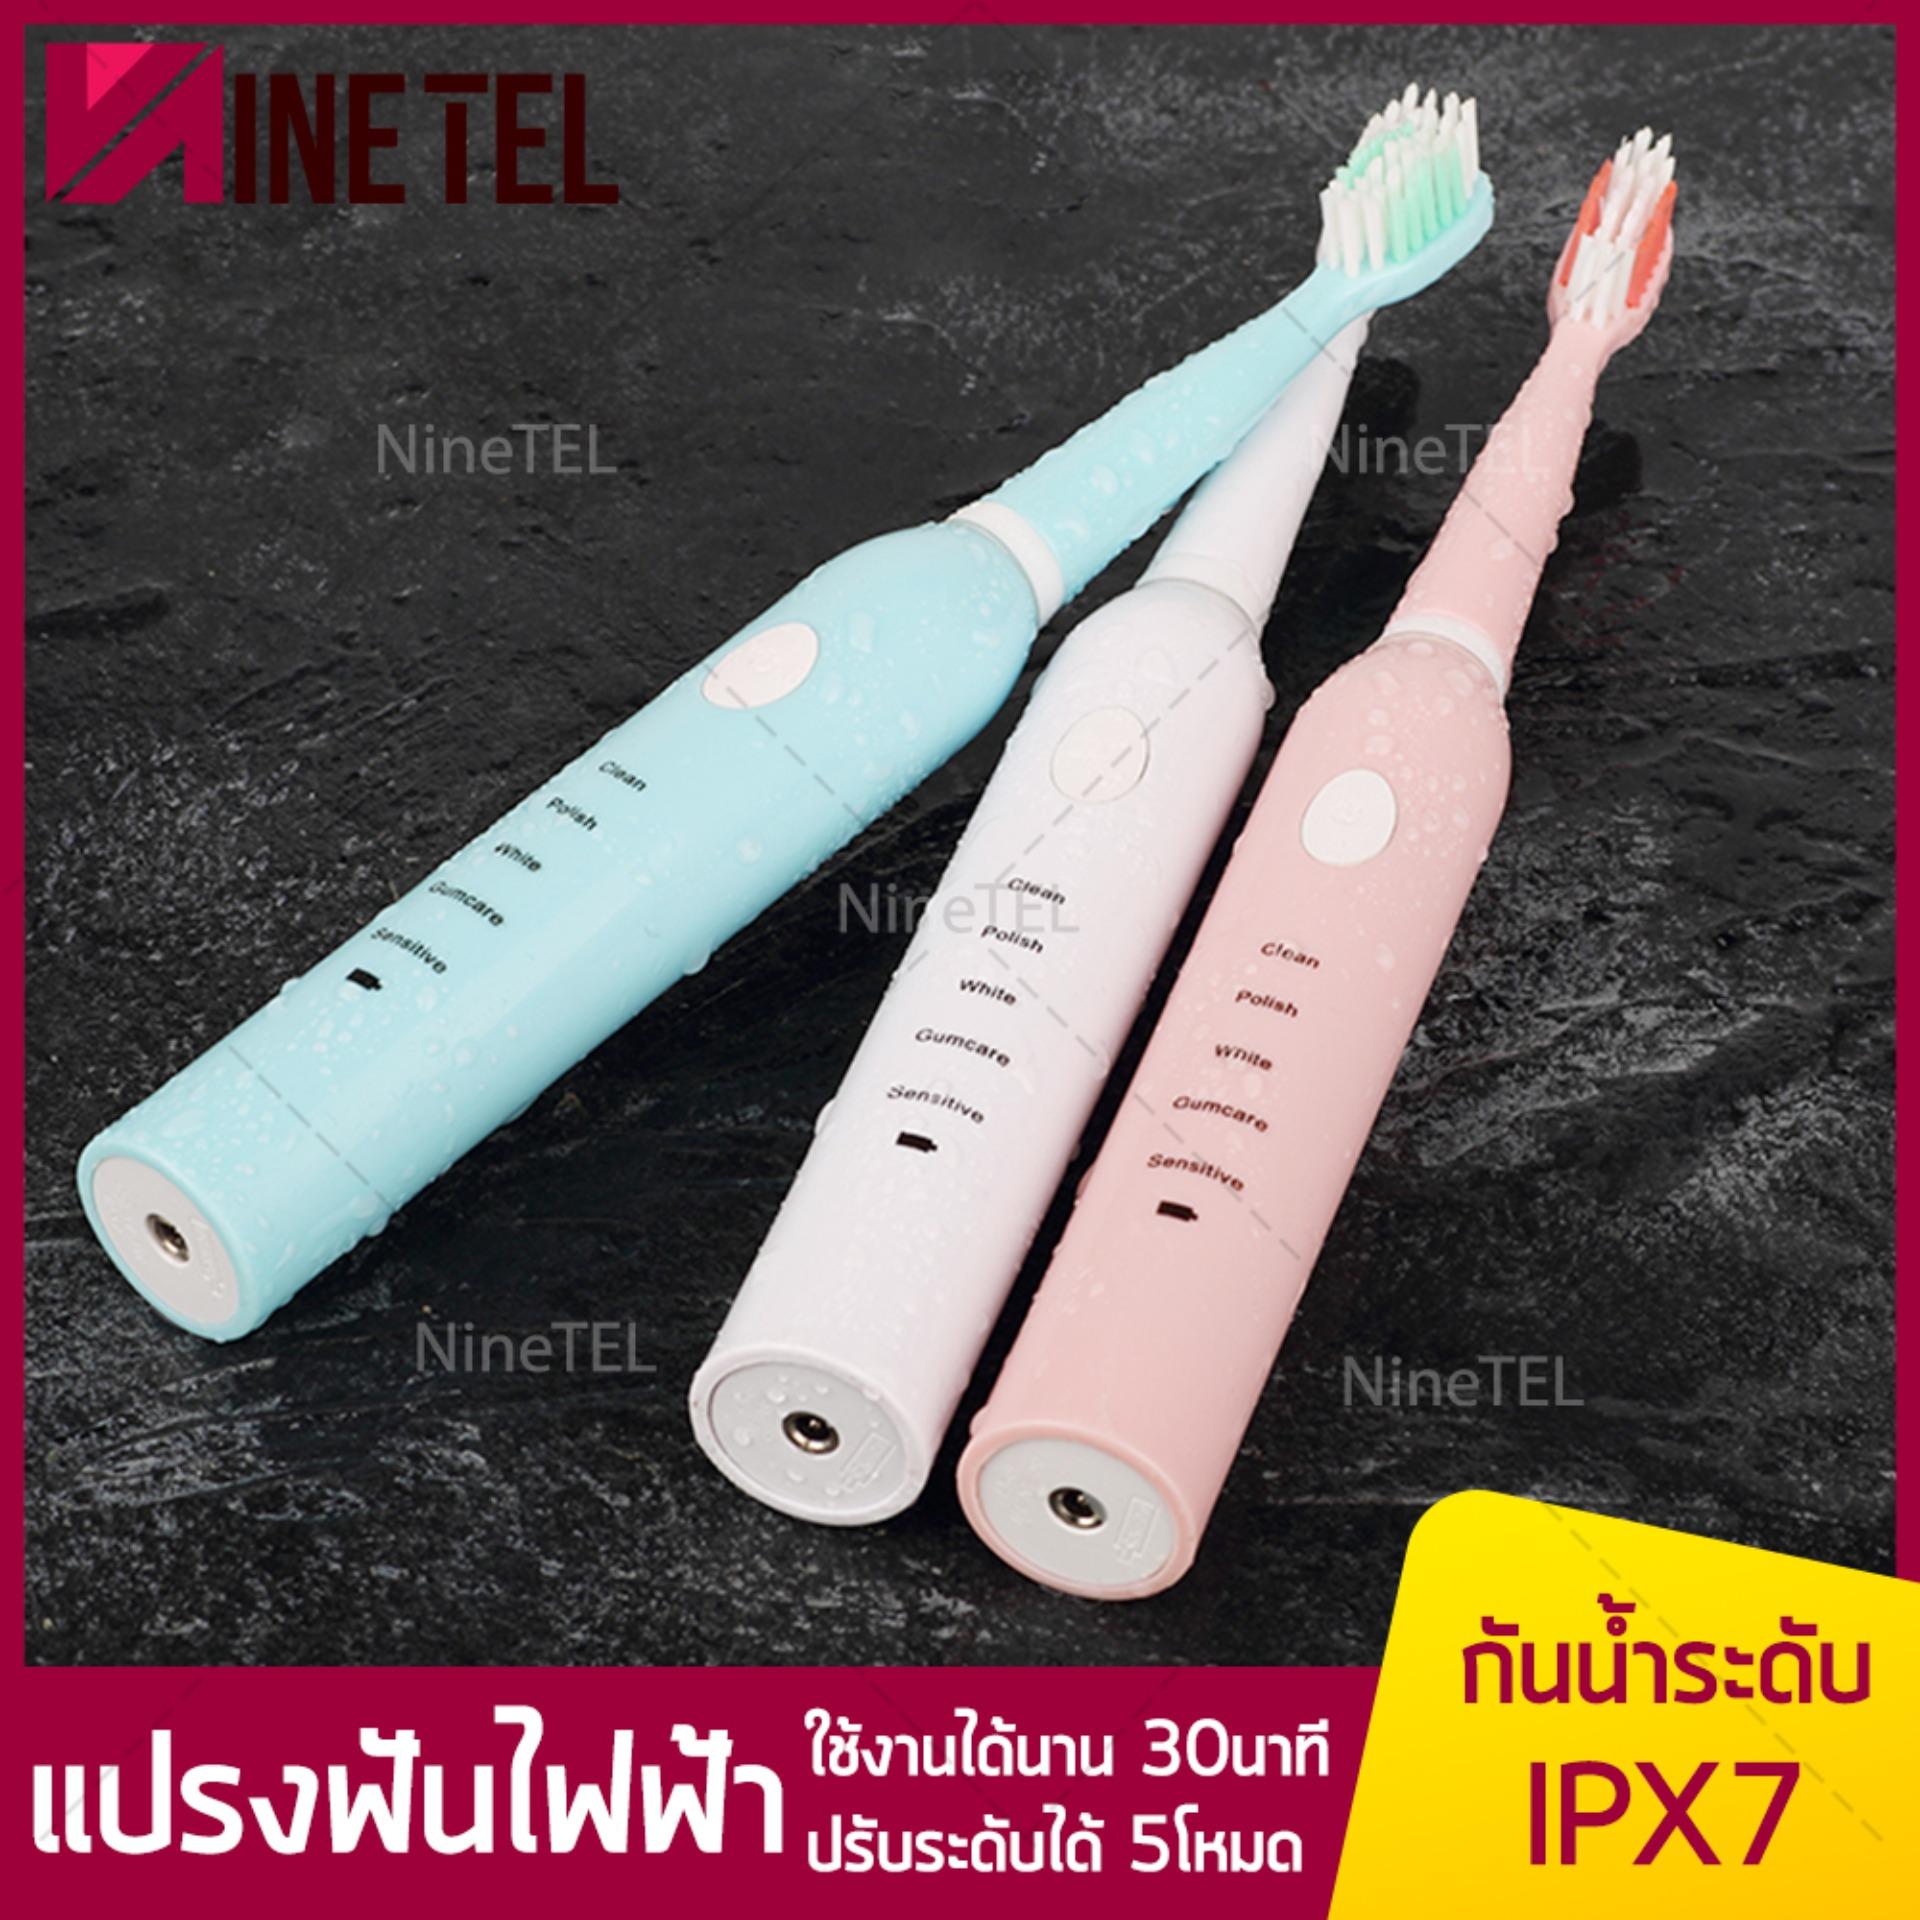  พระนครศรีอยุธยา แปรงสีฟัน แปรงสีฟันไฟฟ้า แฟรงฟัน แปรง แปรงสีฟันอิเล็กทรอนิค USB Charging Electric toothbrush กันน้ำ IPX7 ปรับระดับได้5โหมด NineTel